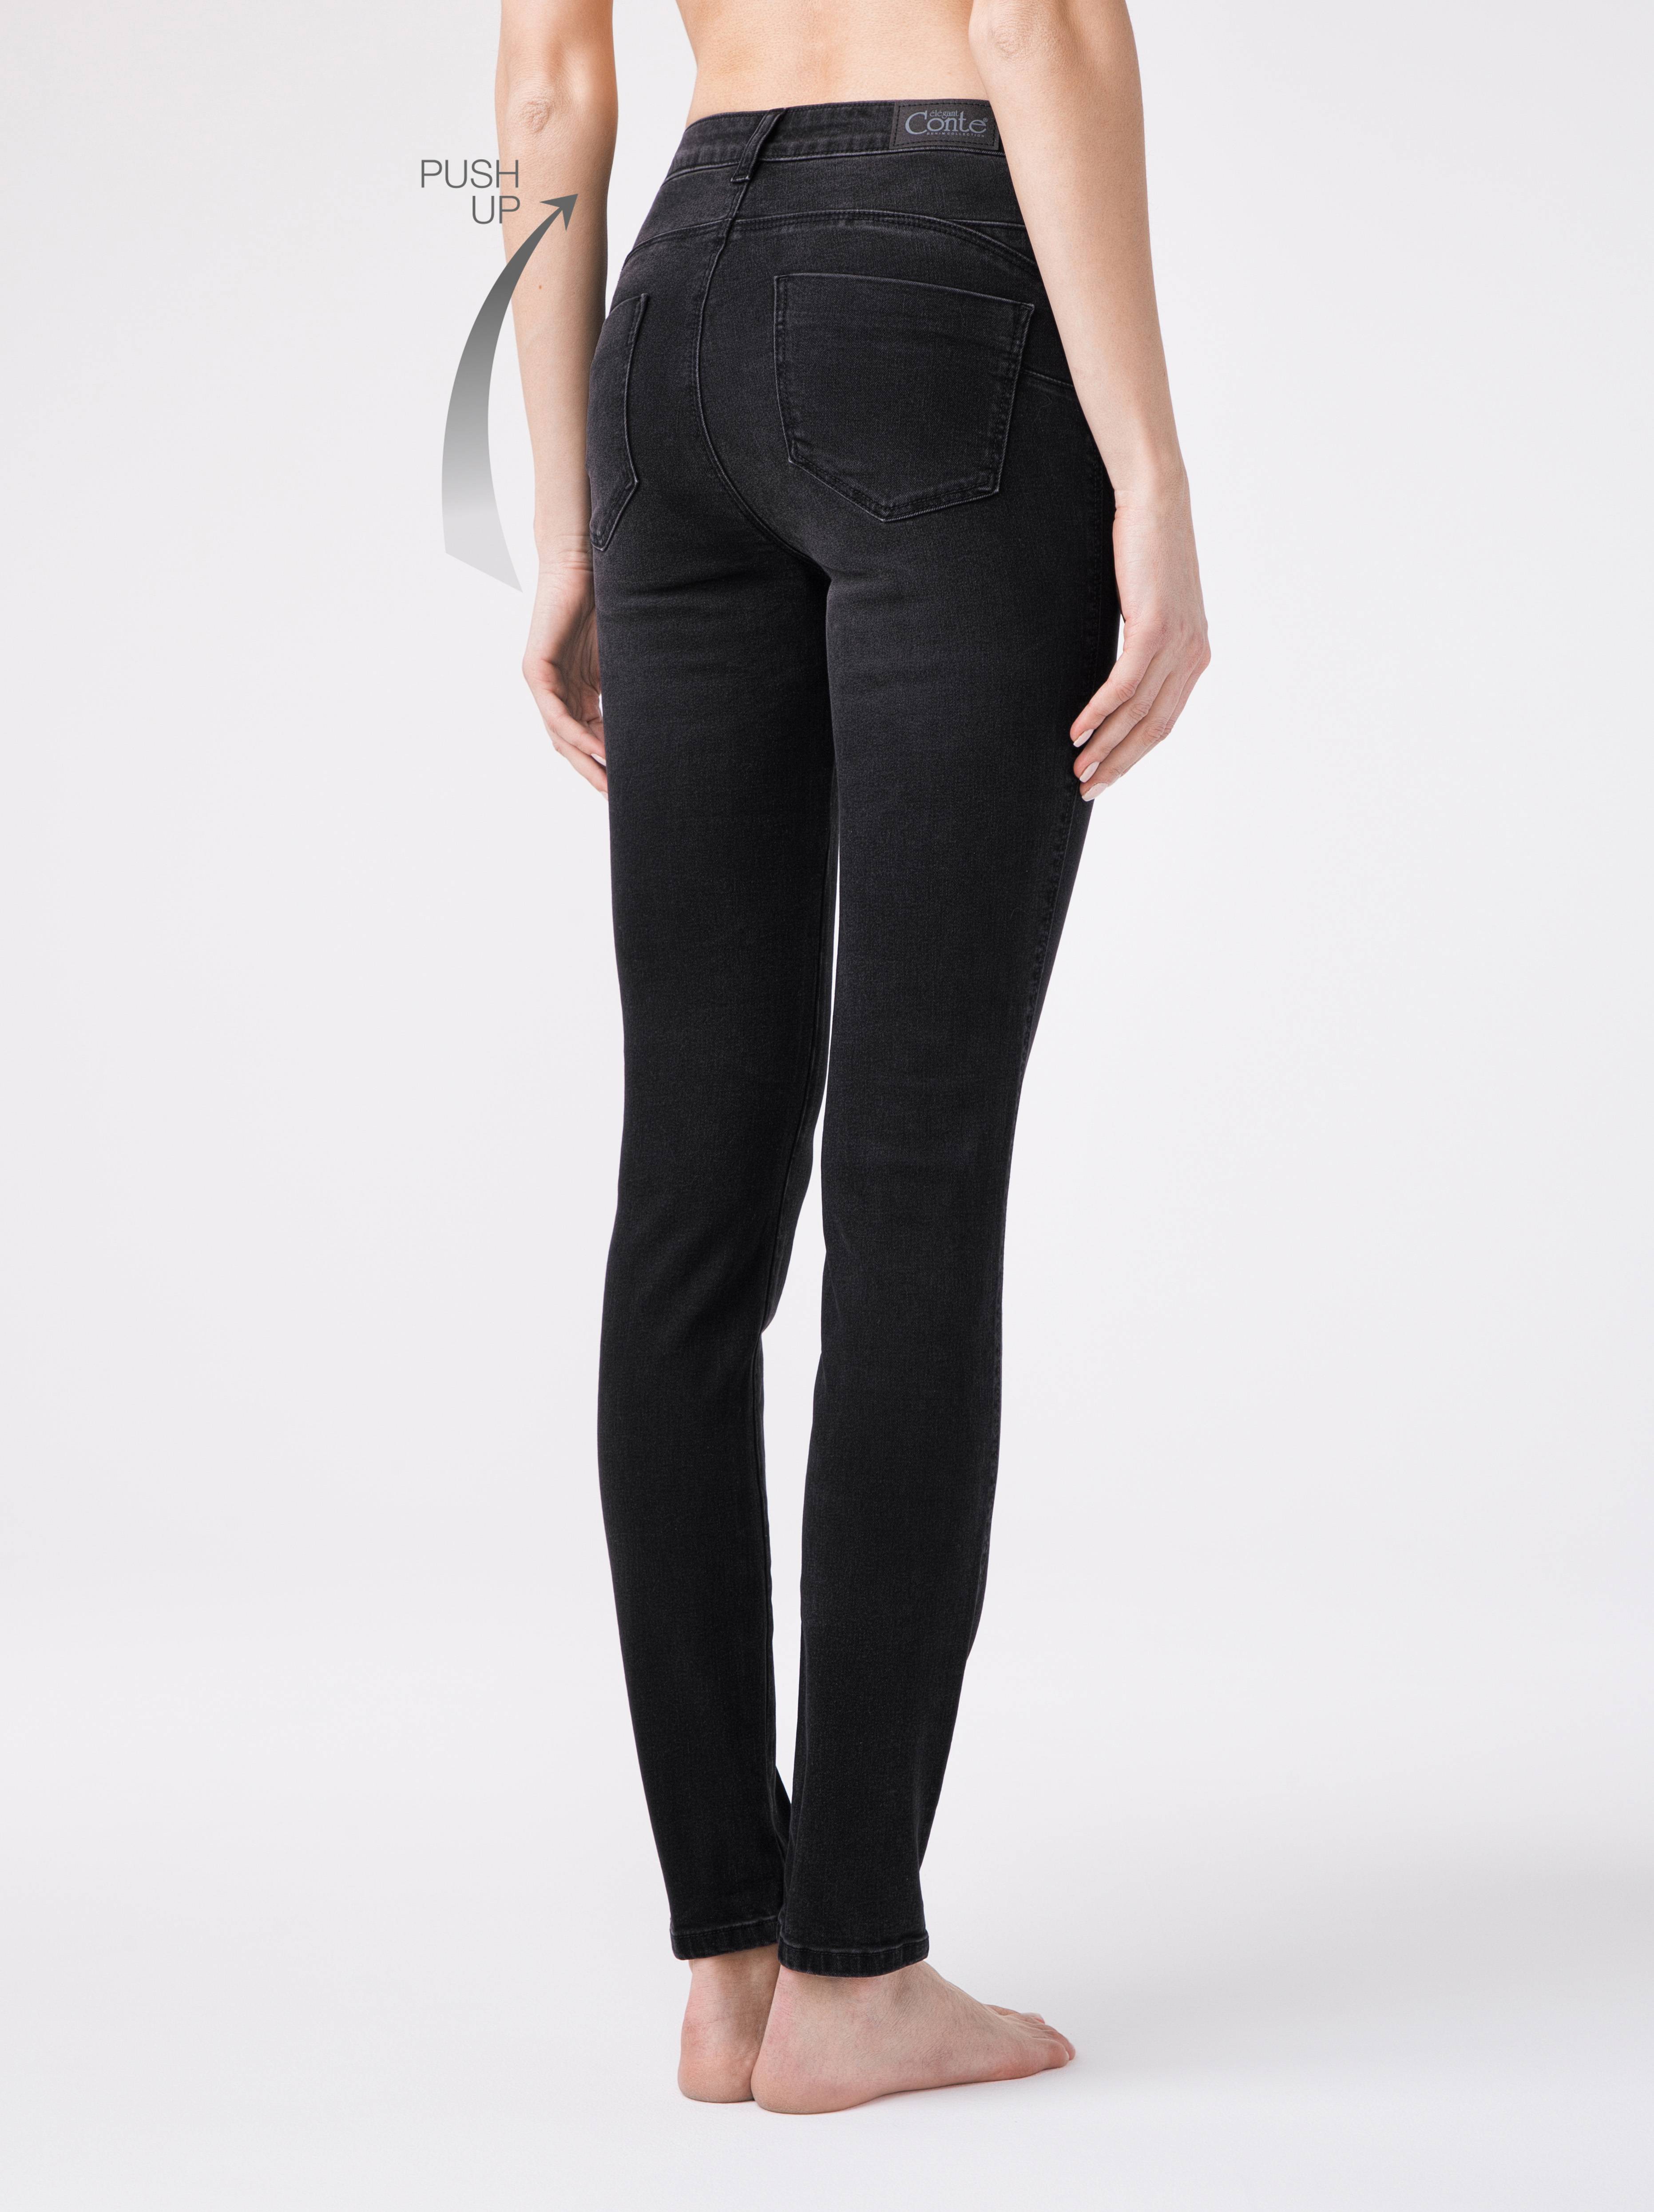 Моделирующие eco-friendly джинсы skinny push-up с высокой посадкой CON-148 Conte ⭐️, цвет washed black, размер 164-102 - фото 1